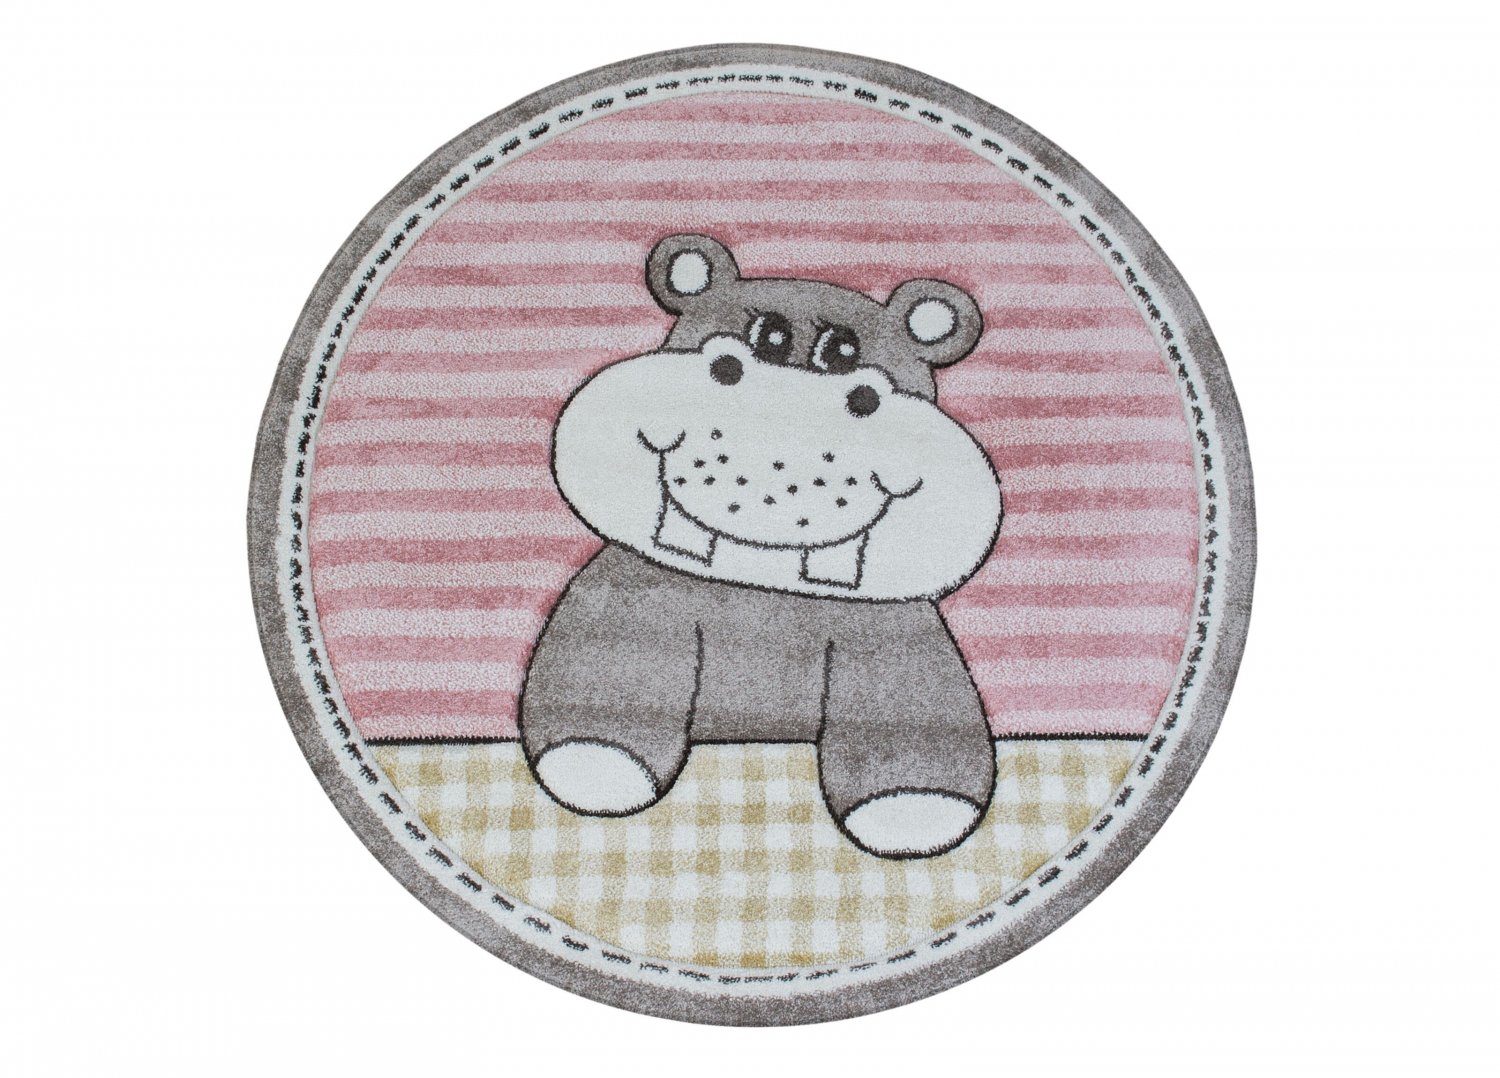 Tappeti per bambini - Caruba Hippo Tondo (rosa)